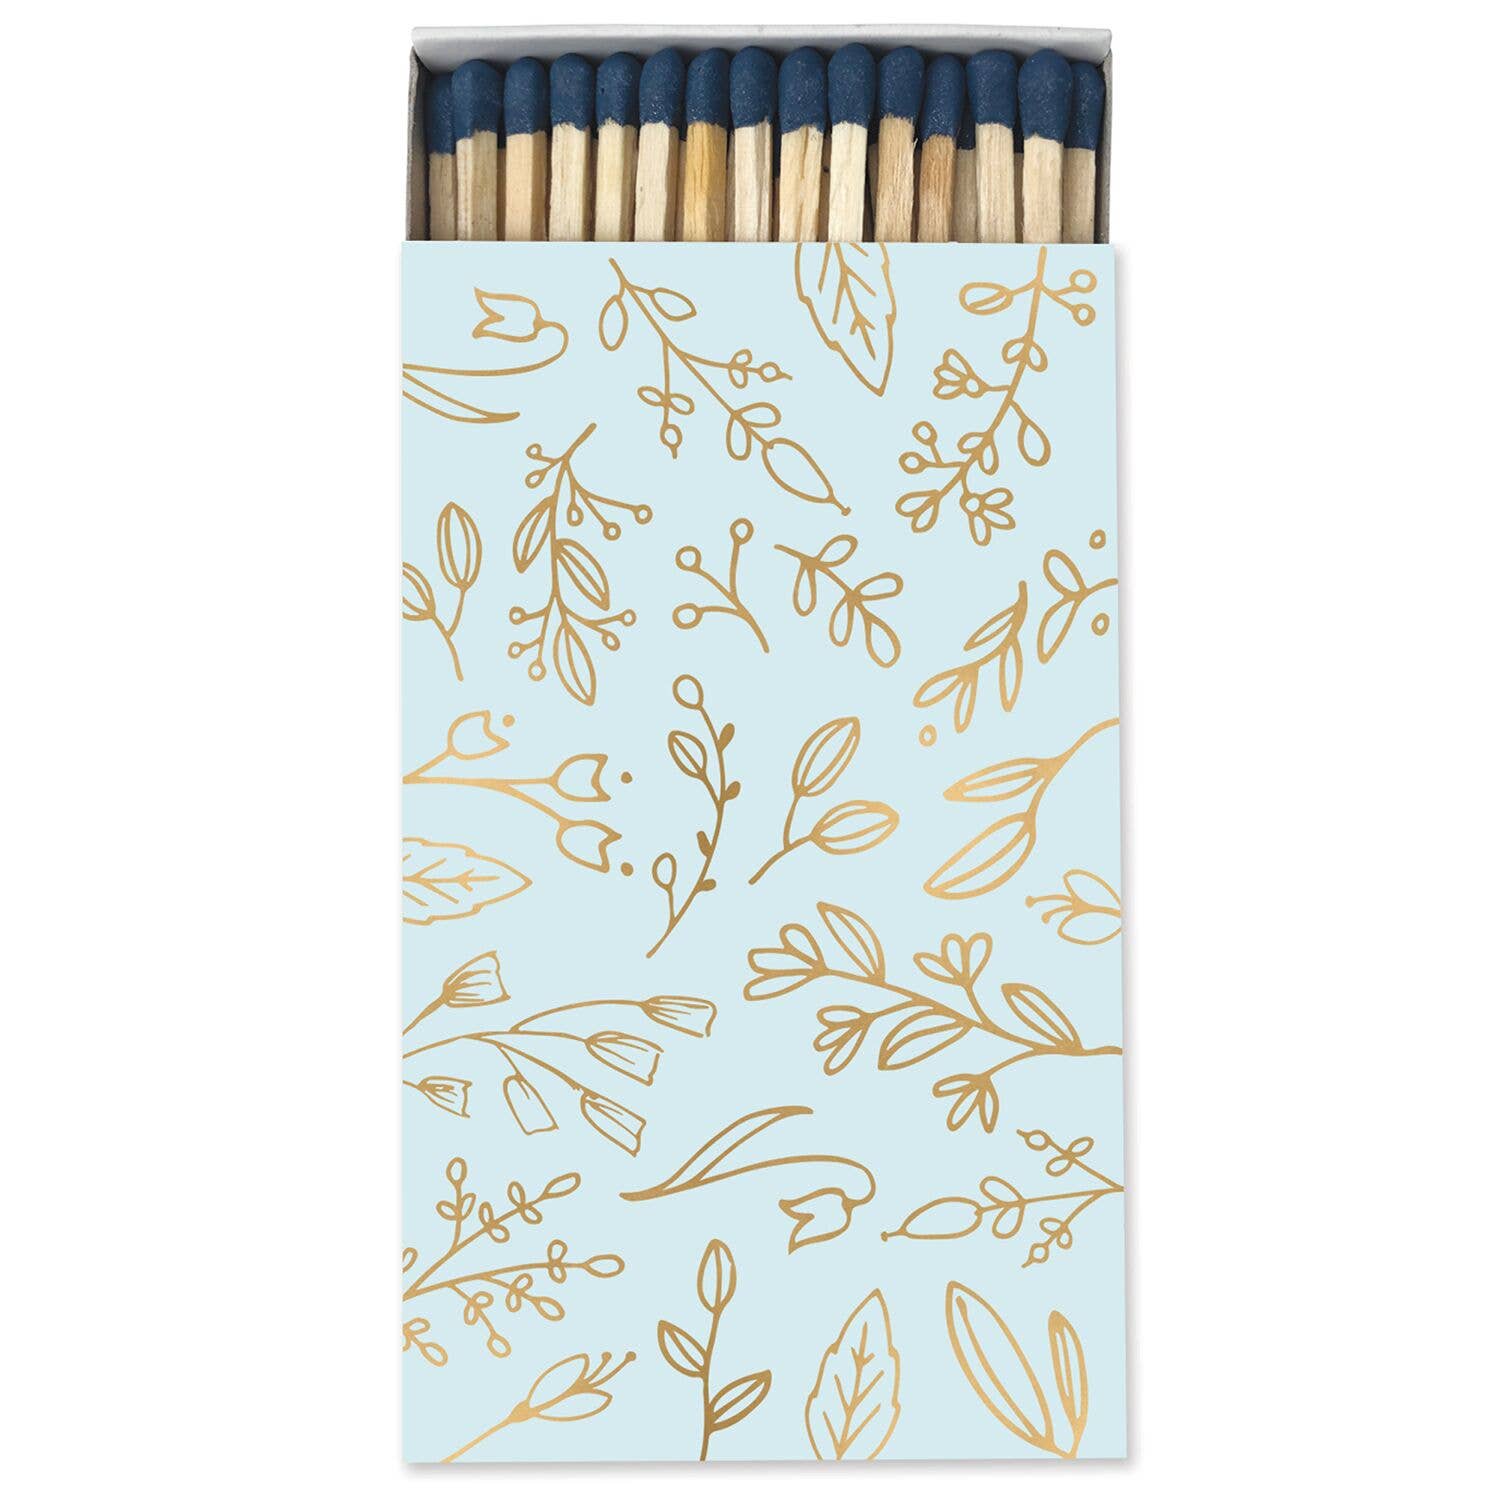 Frankie & Claude – Large Match Box: Pastel Blue & Gold Foil Floral